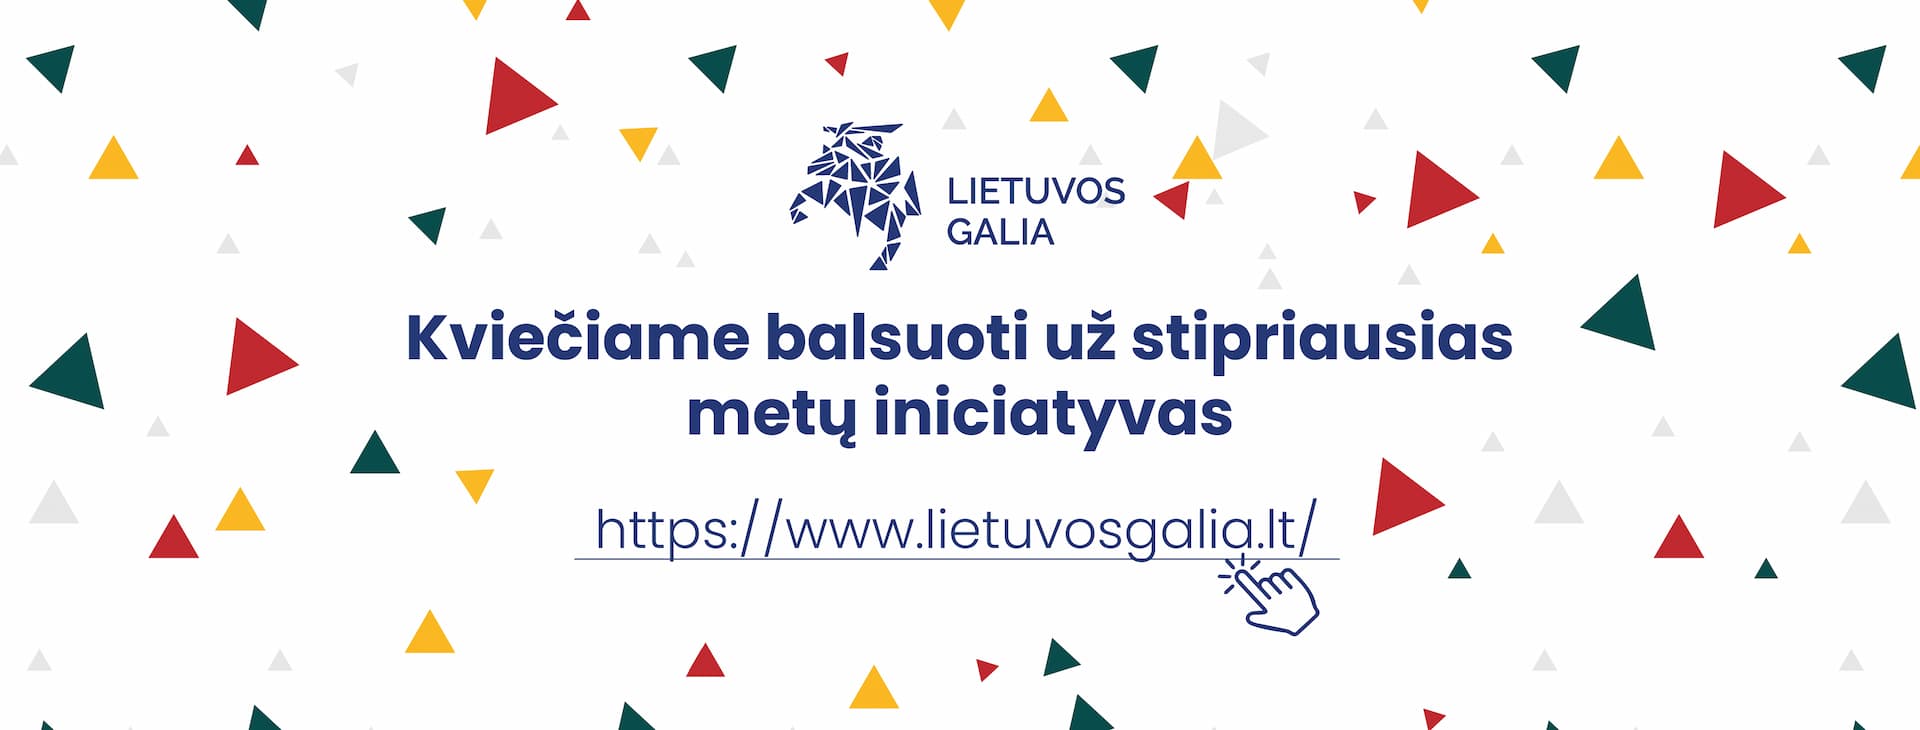 Kviečiame palaikyti Bibliotekos iniciatyvas projekte „Lietuvos galia“